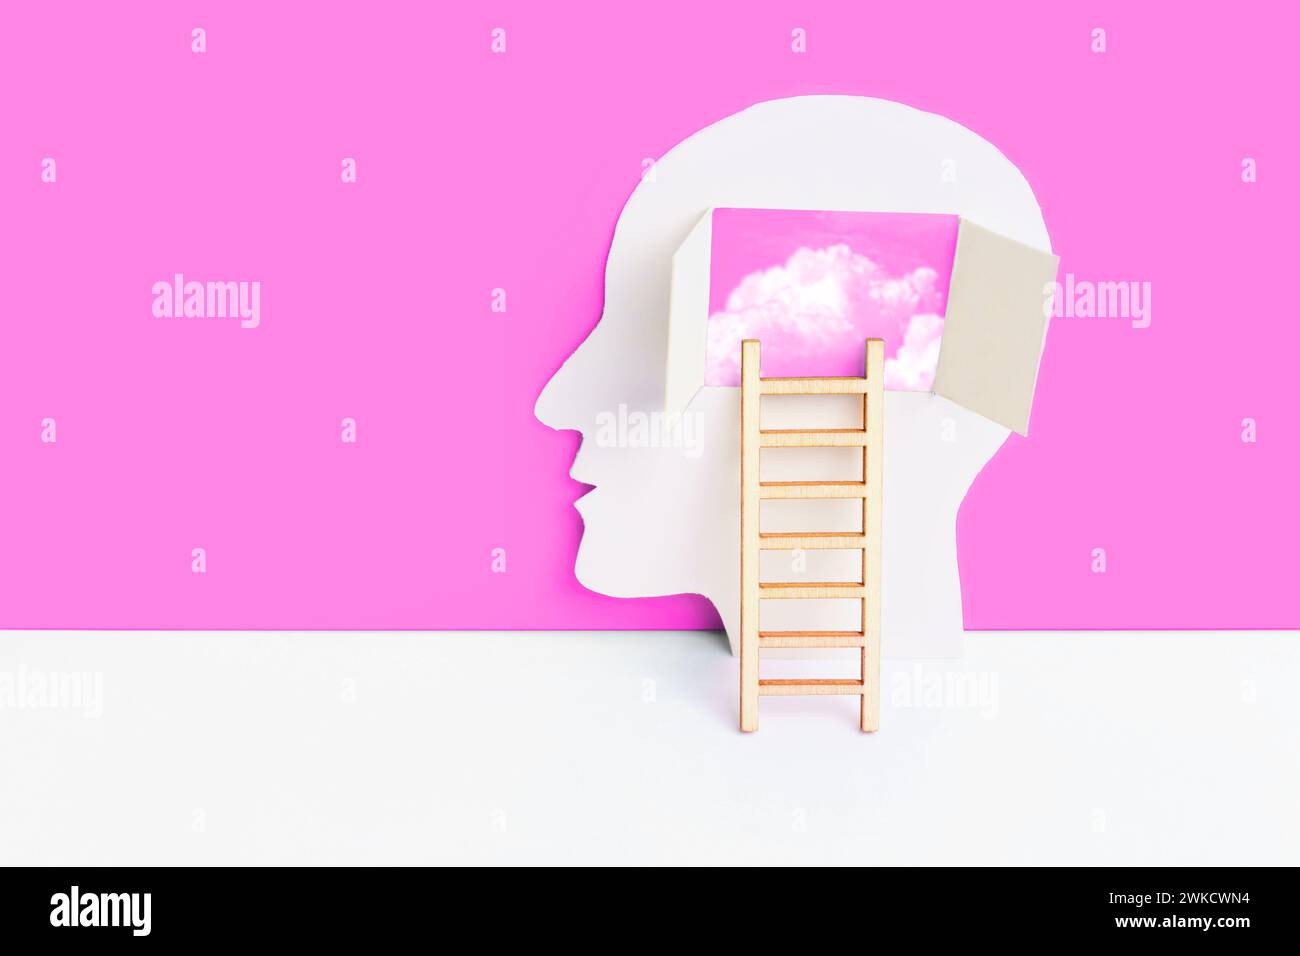 Menschlicher Kopf Papierausschnitt und kleine Leiter zur Zusammensetzung des Hirnbereichs auf rosa-weißem Hintergrund. Verständnis und Selbstentdeckungskonzept mit einem Stockfoto